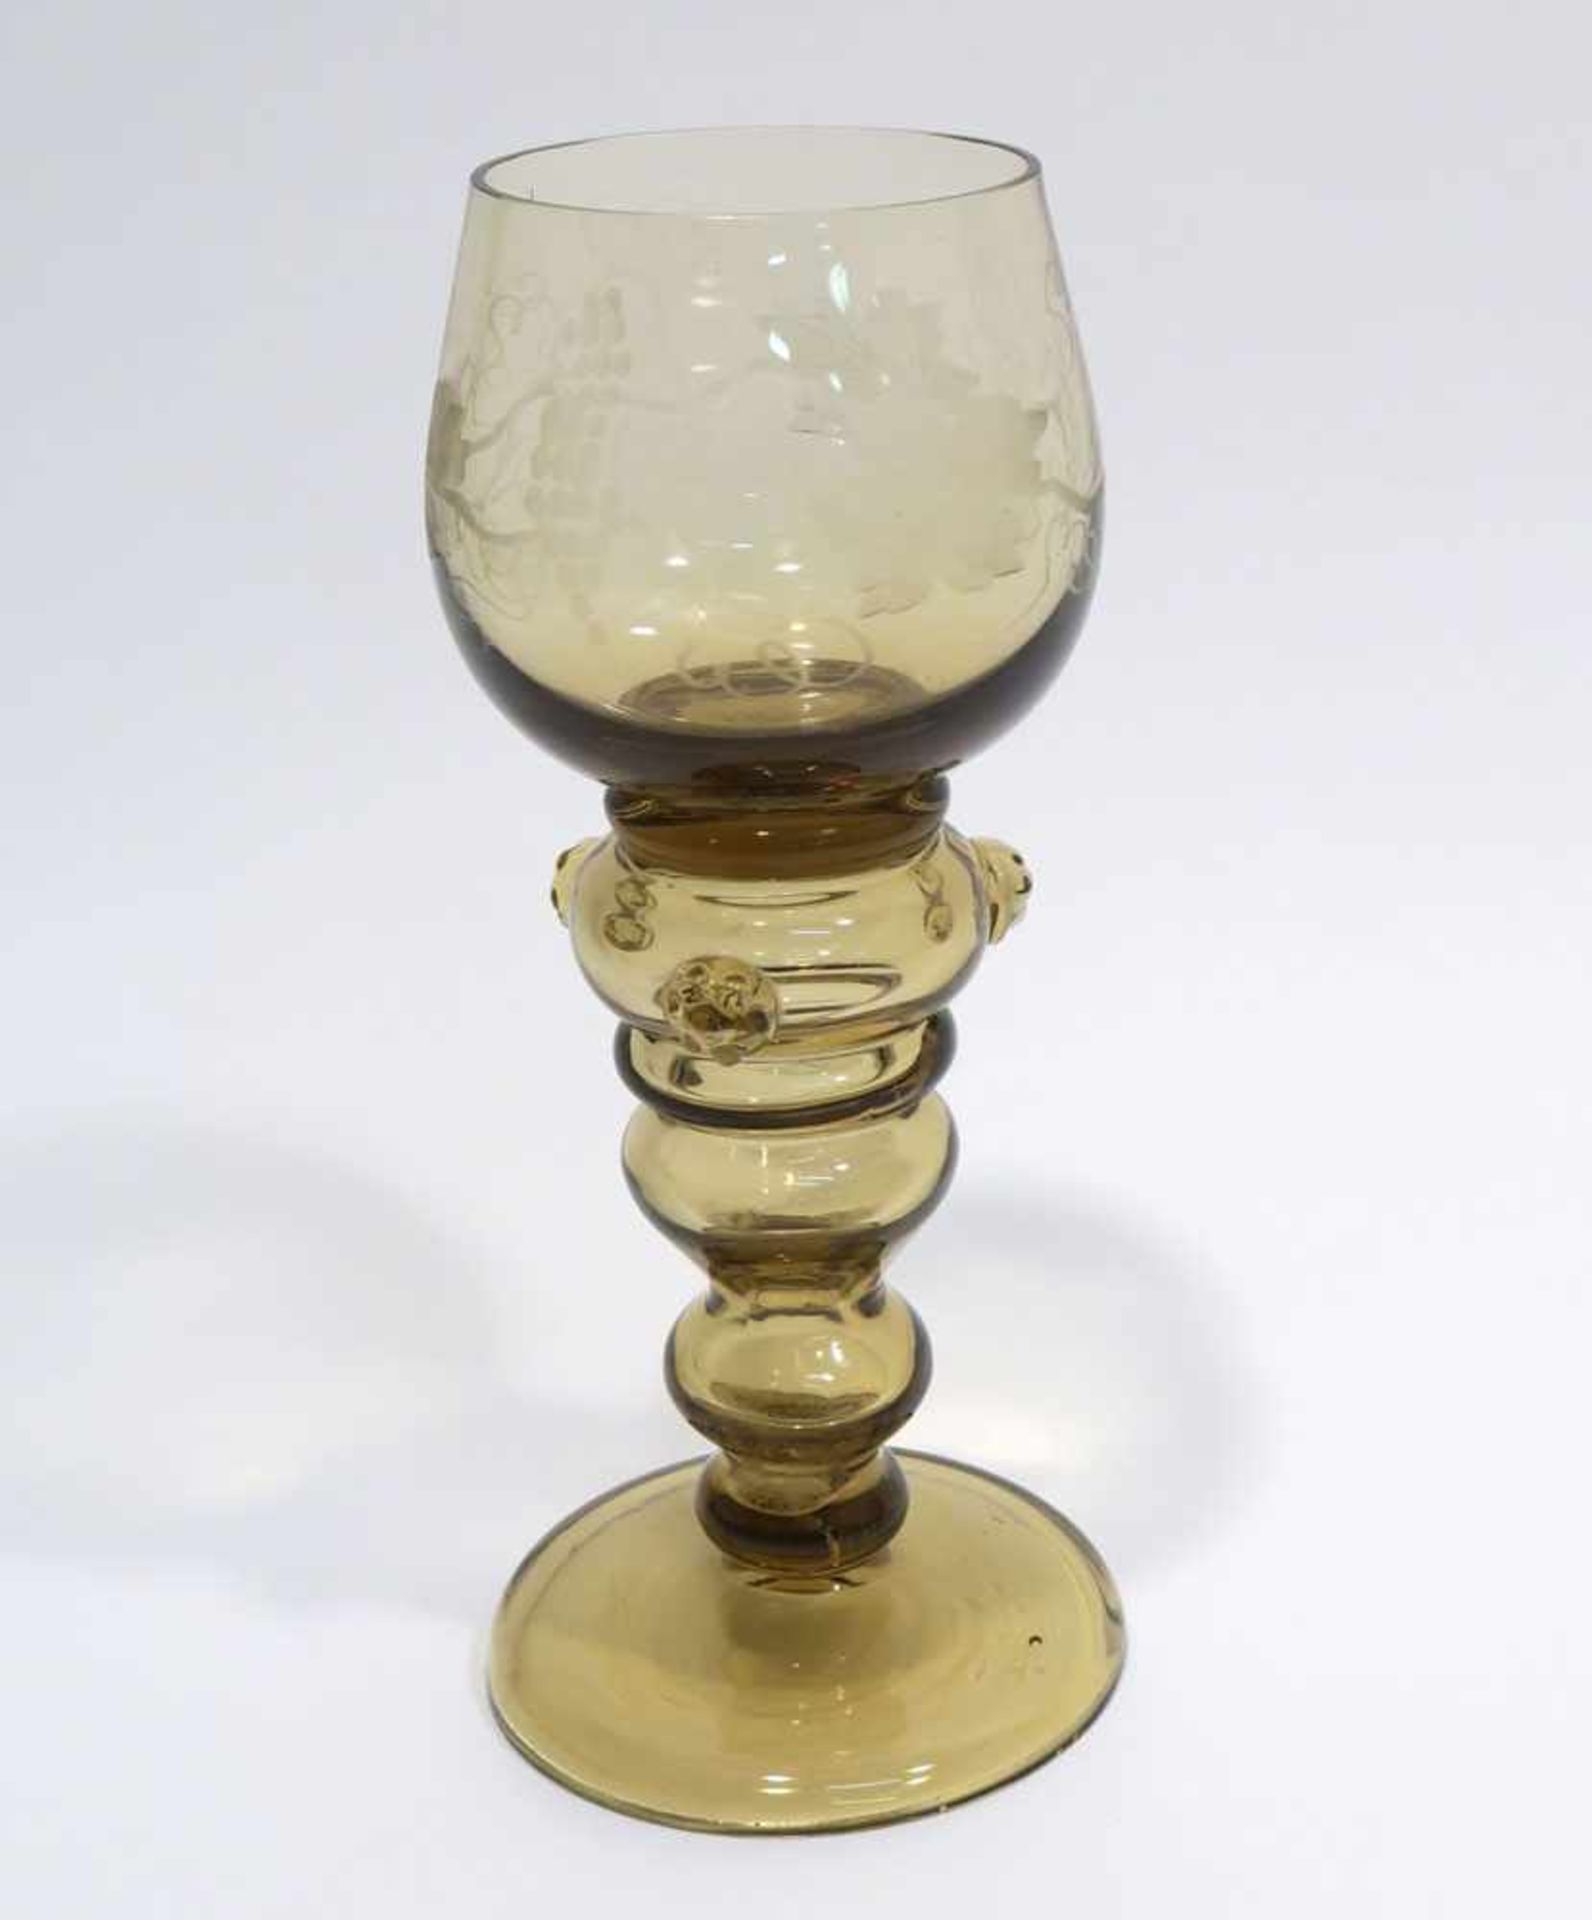 RömerBräunliches Glas. Hohlbalusterschaft, drei aufgesetzte Noppen, geschnittener Weinlaubdekor.